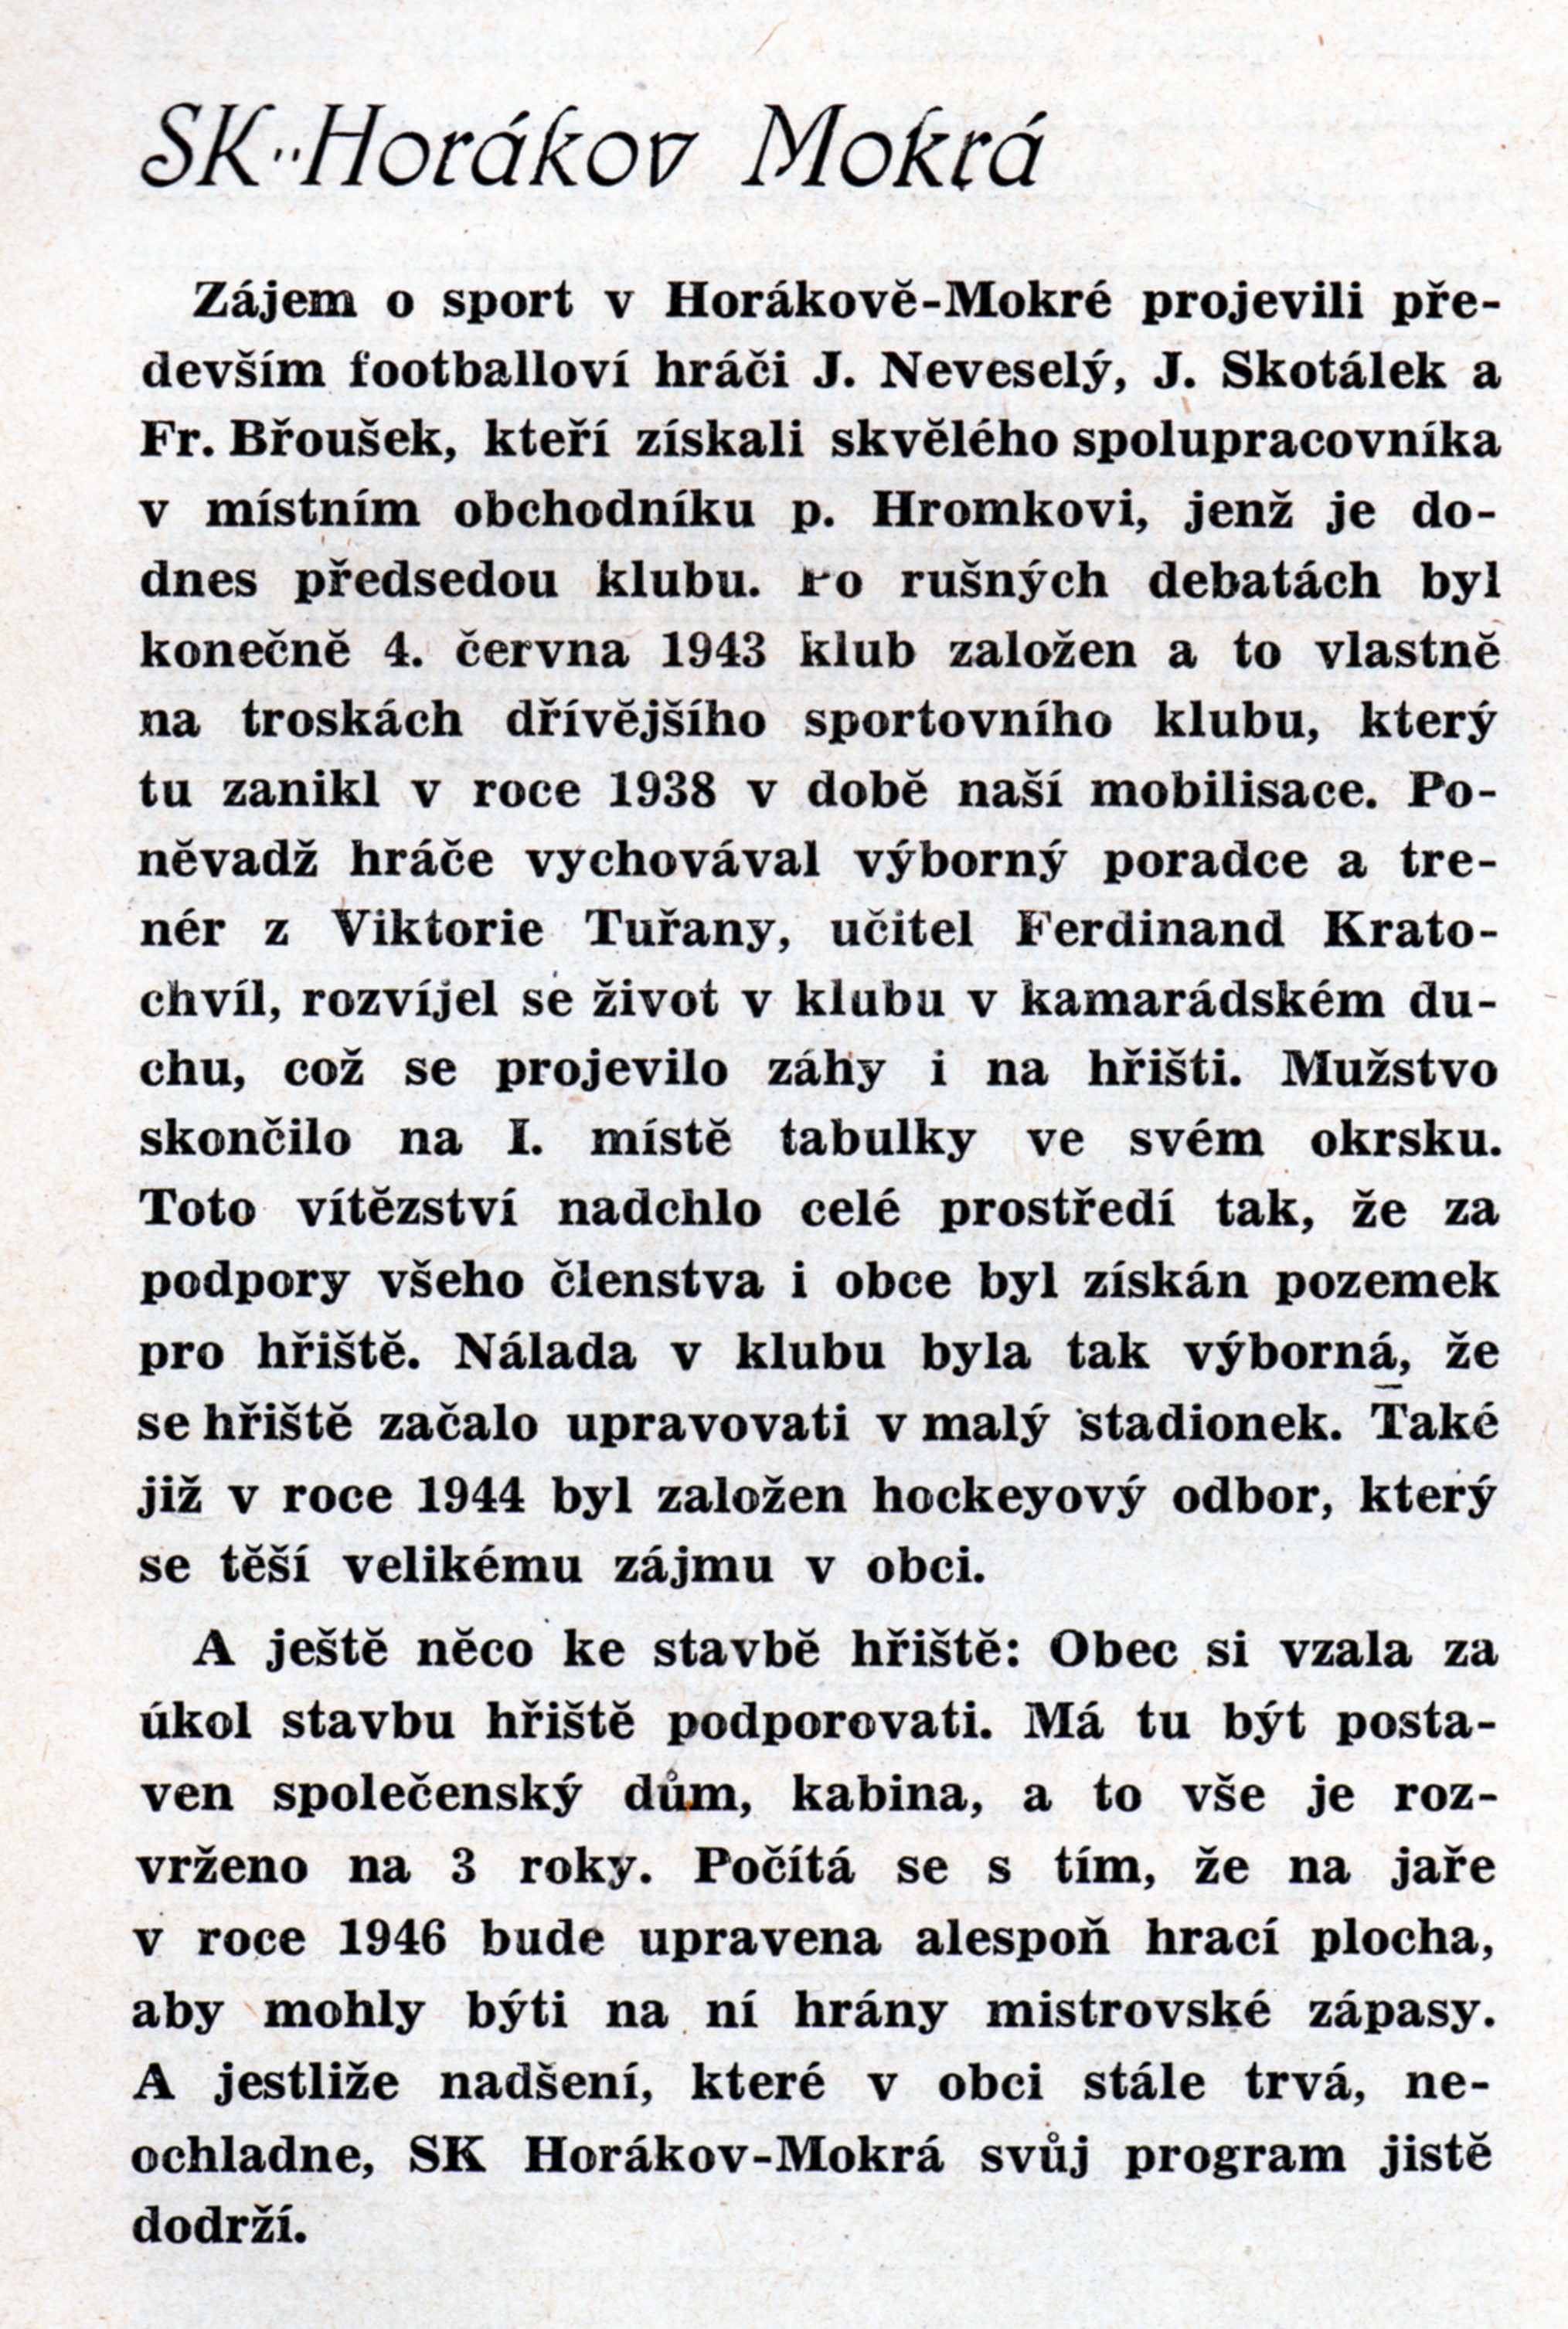 Článek z knihy F. V. Ryšavého: Bradova západomoravská župa footballová v odboji a historii, r. 1946